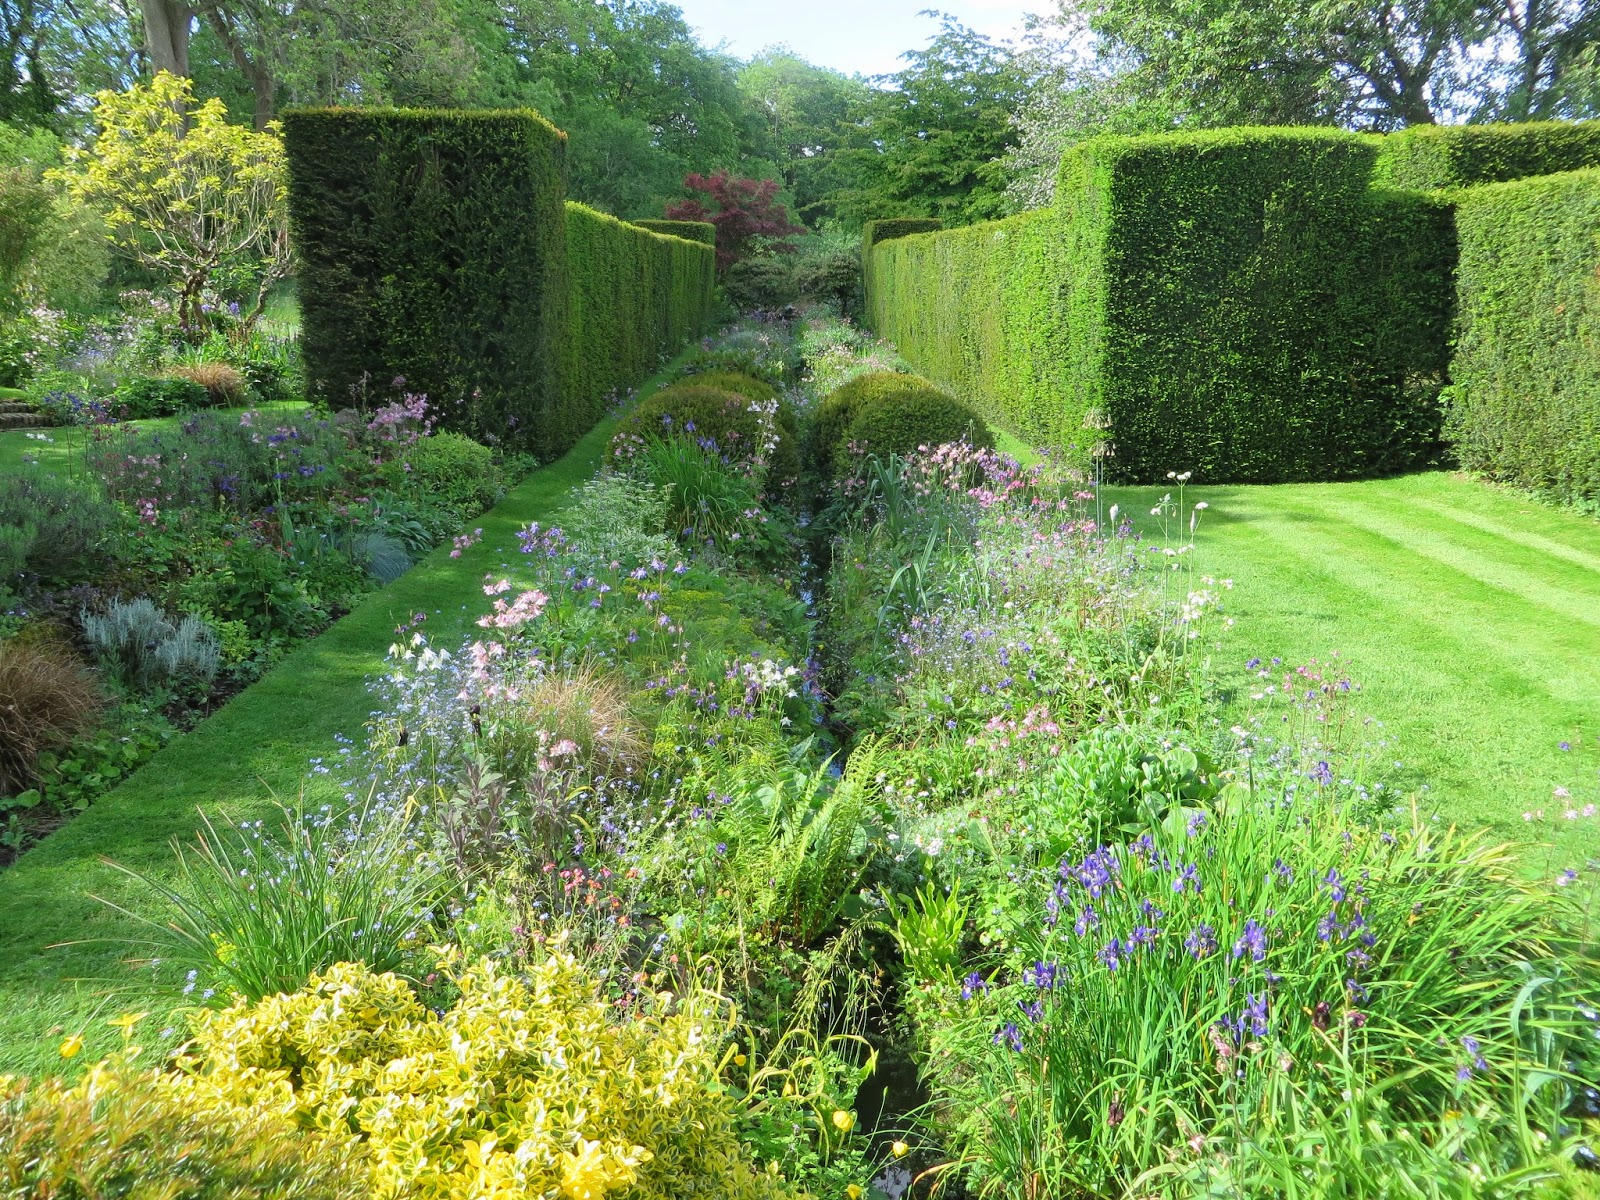 The Gardener's Eye: Vann, an Arts and Crafts Garden in Surrey